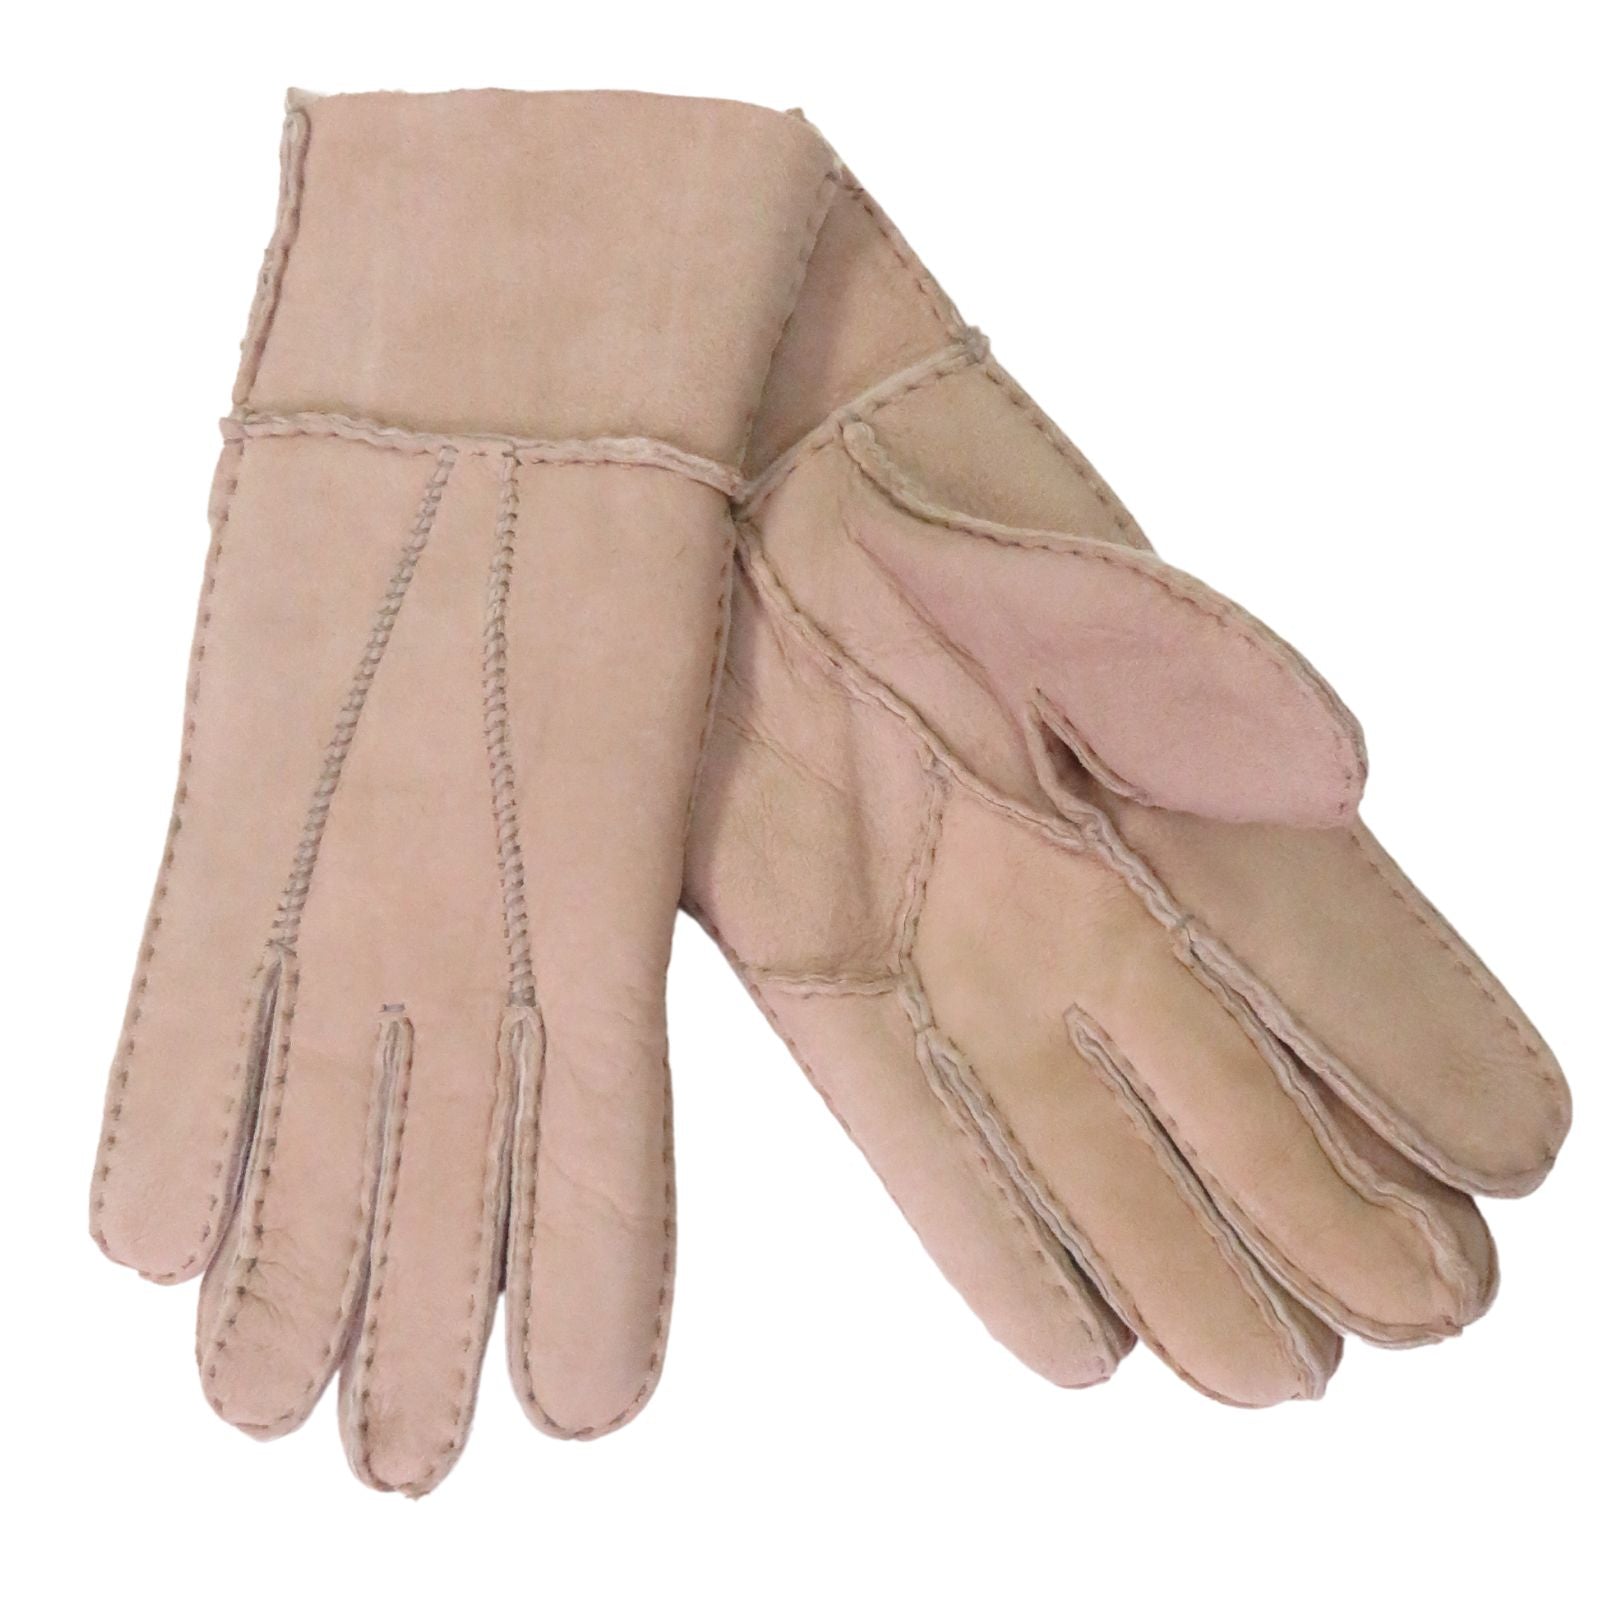 Women's Sheepskin Gloves, Our "Dogwalker" ASSORTED BROWNS